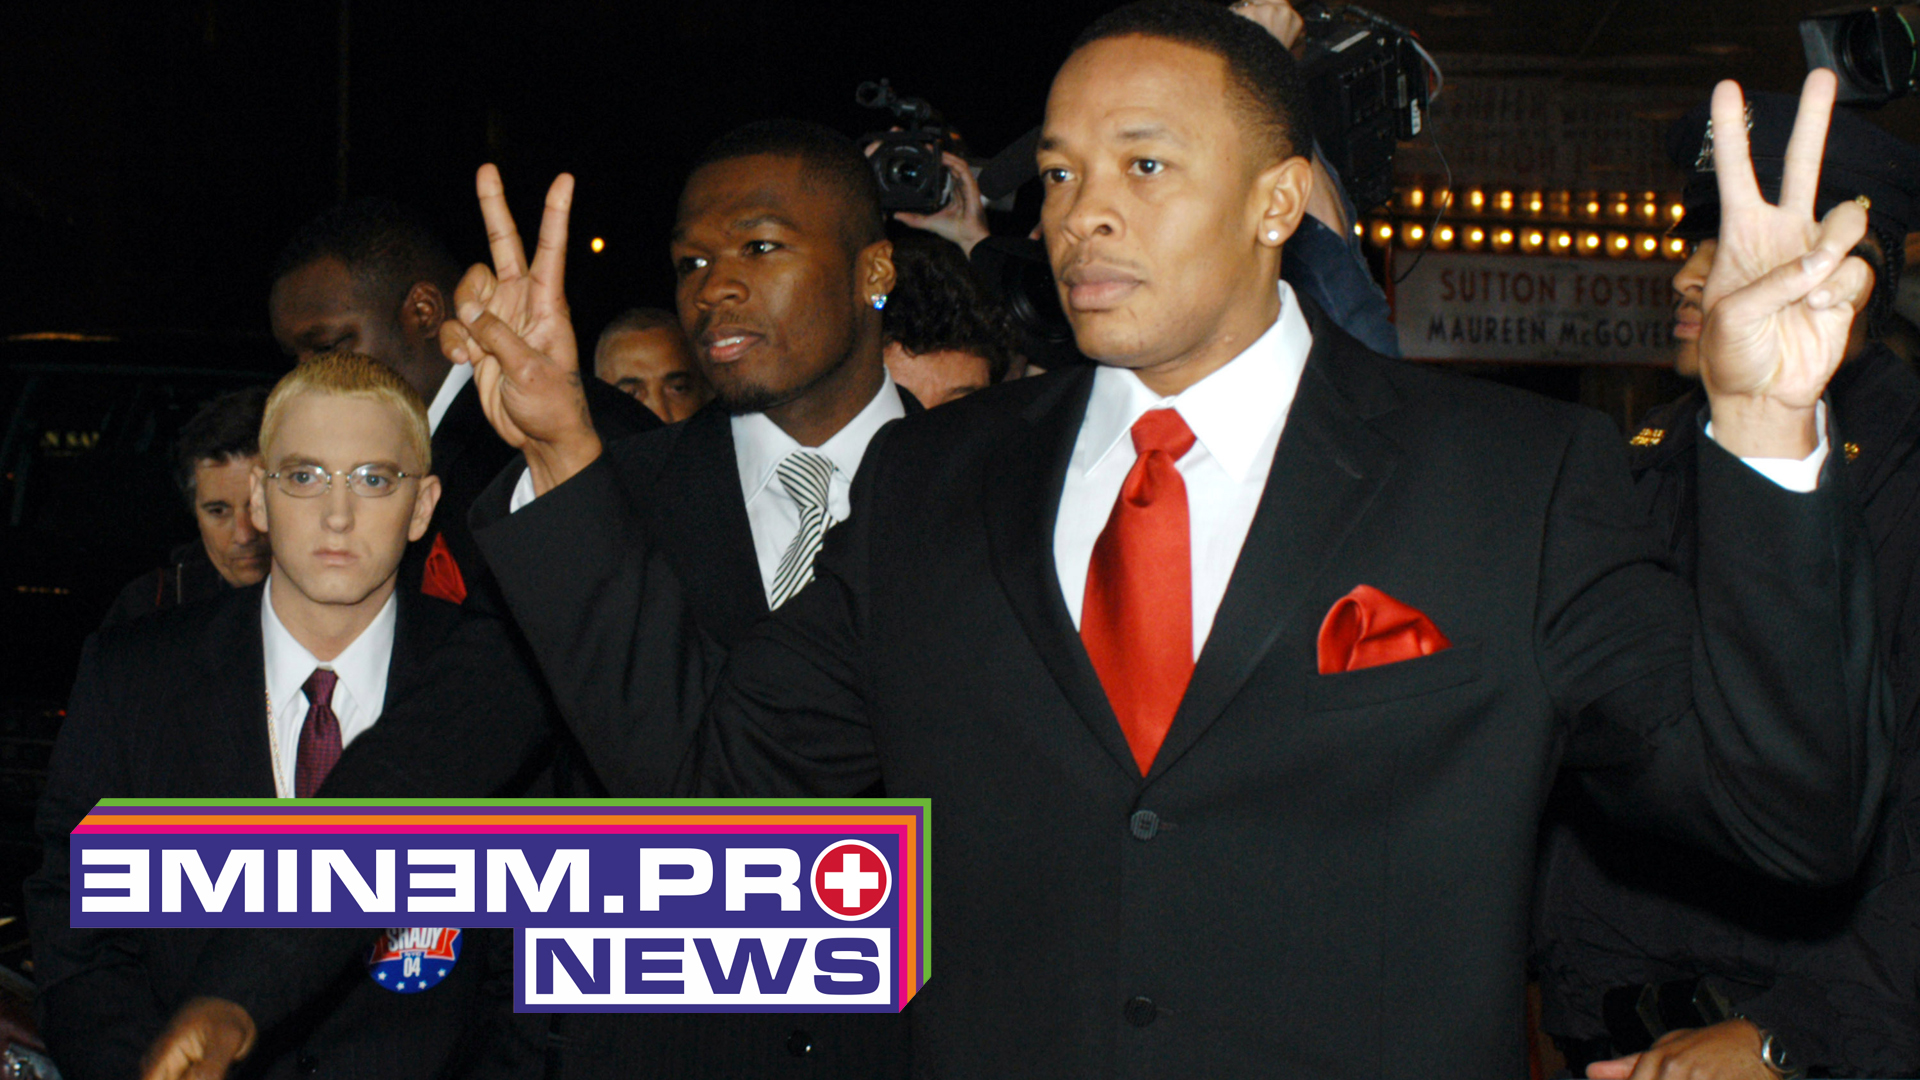 ePro News 53: Dr. Dre продолжает работу над «Detox». Всё о премьере клипа Эминема «River» и юбилей лучшего альбома 50 Cent